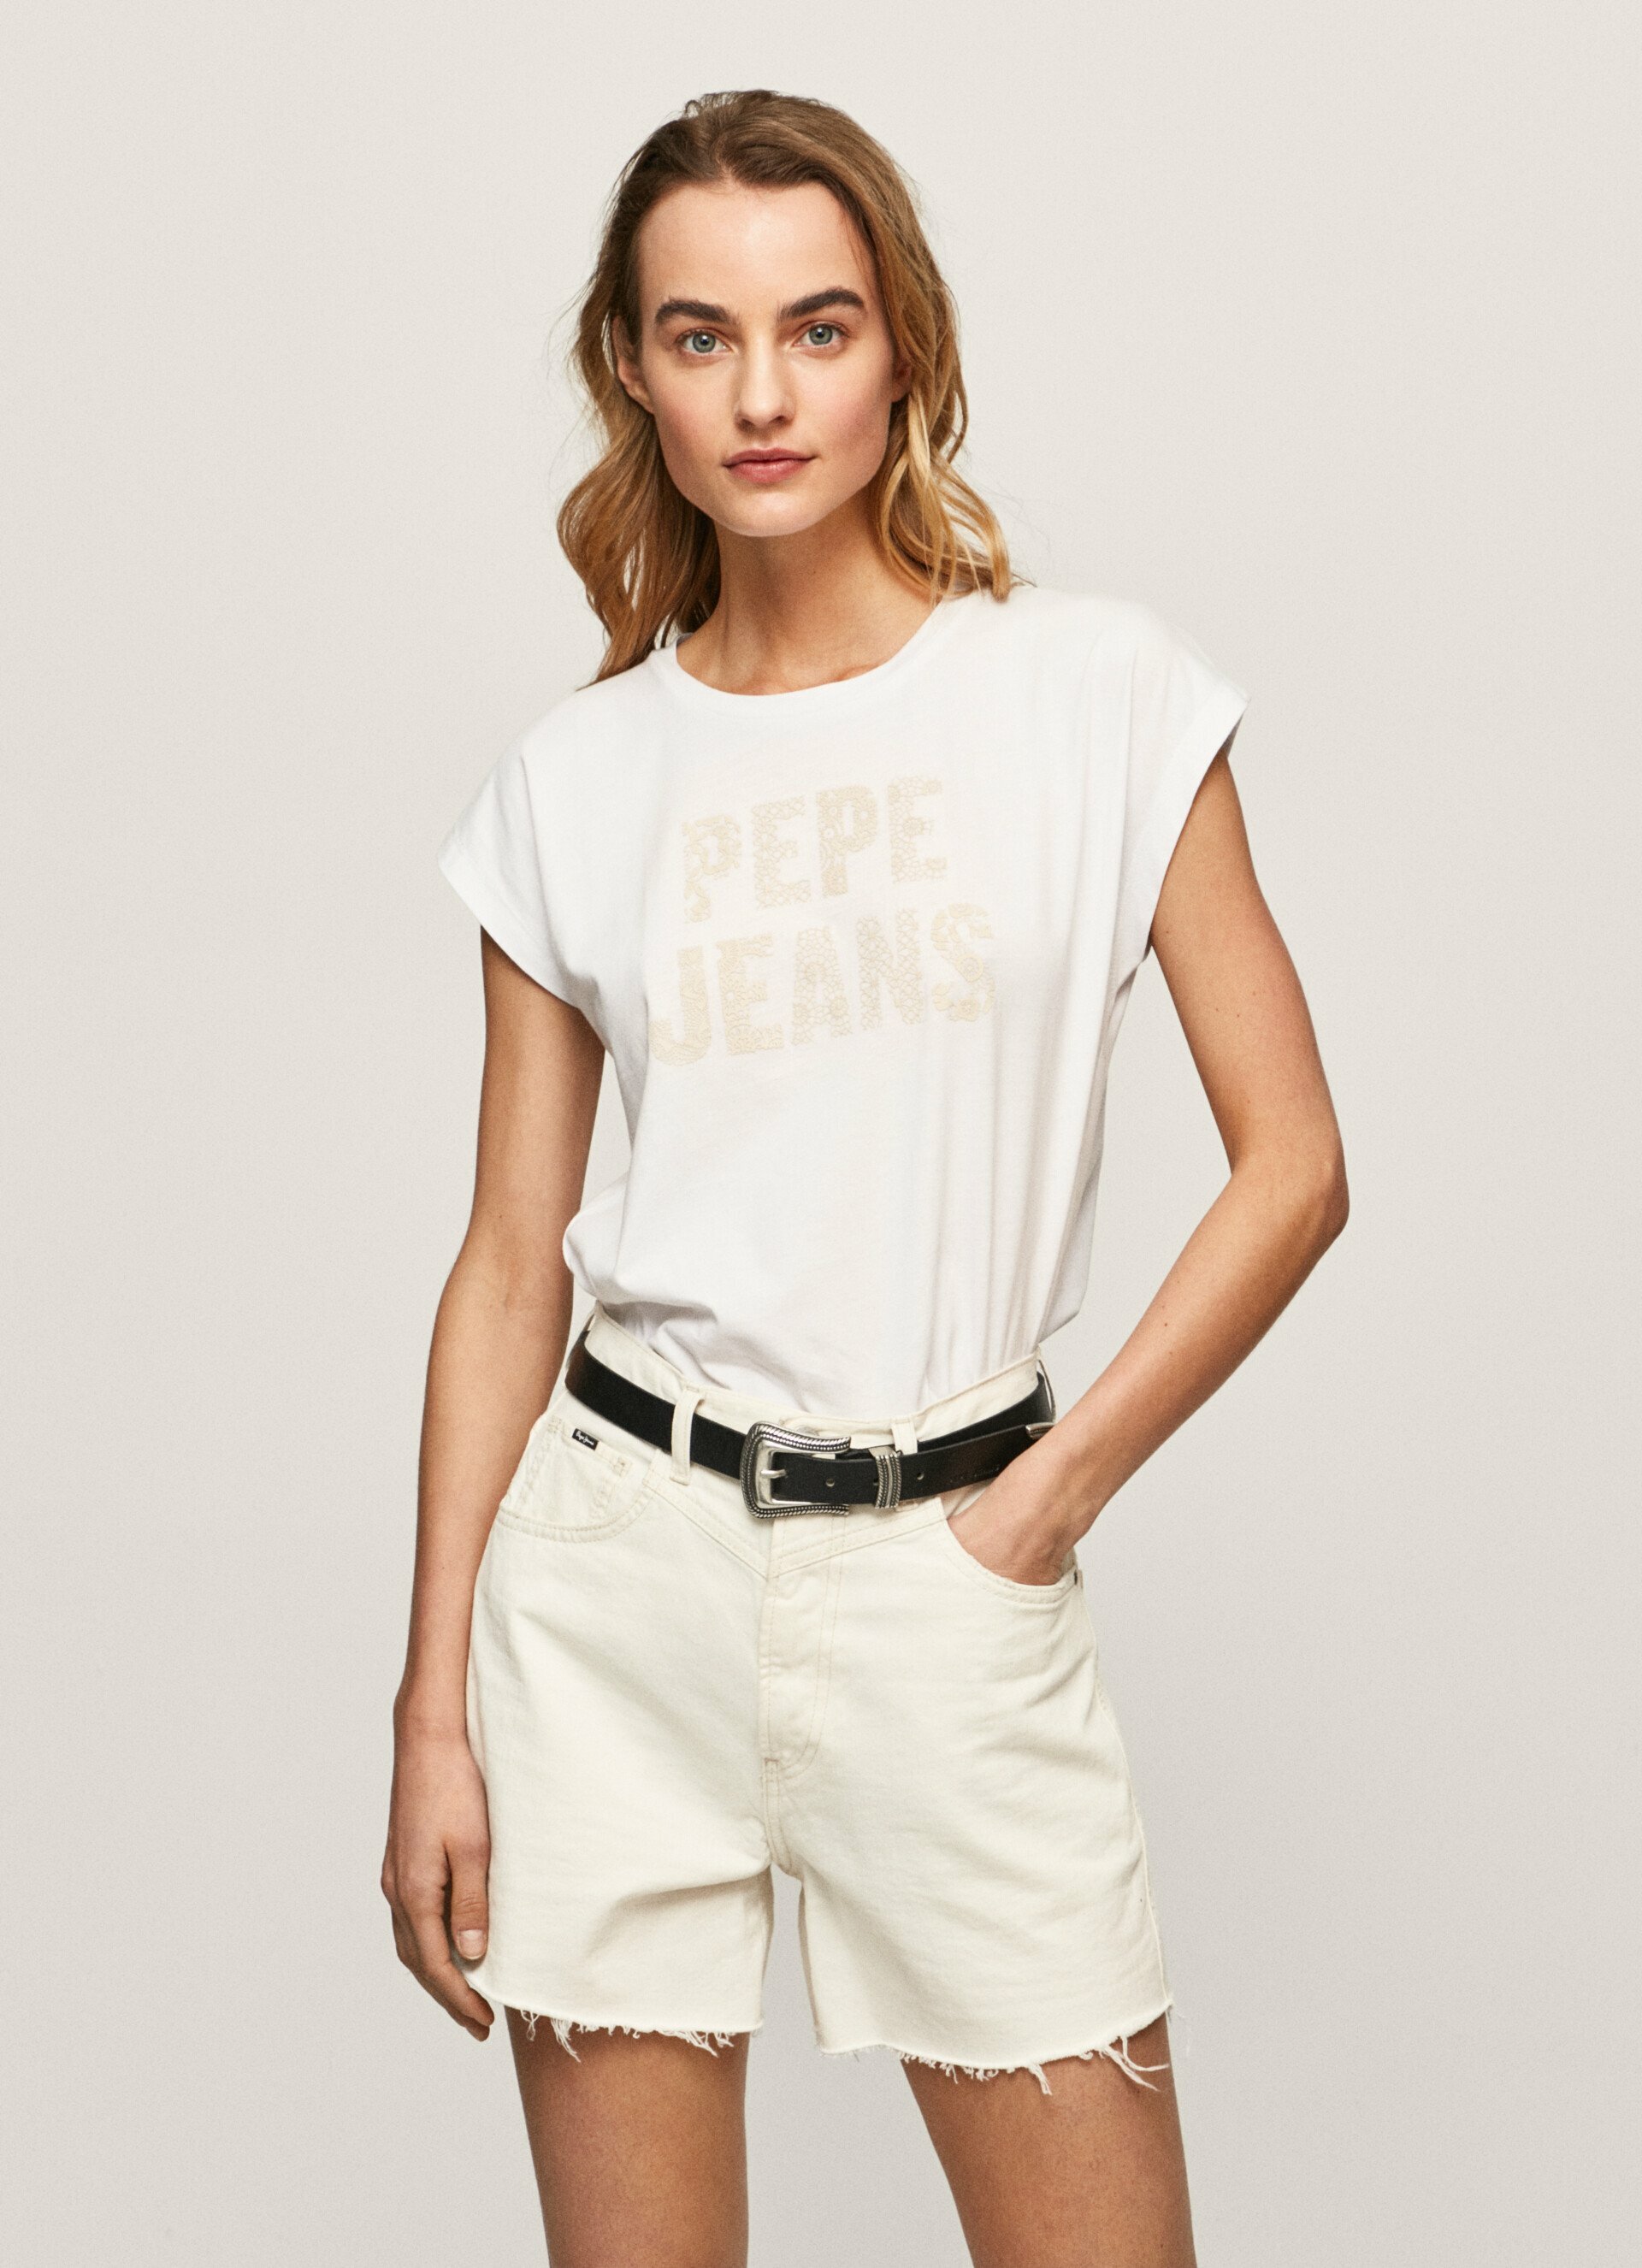 Pepe Jeans dámské bílé triko OLA s potiskem - S (800)